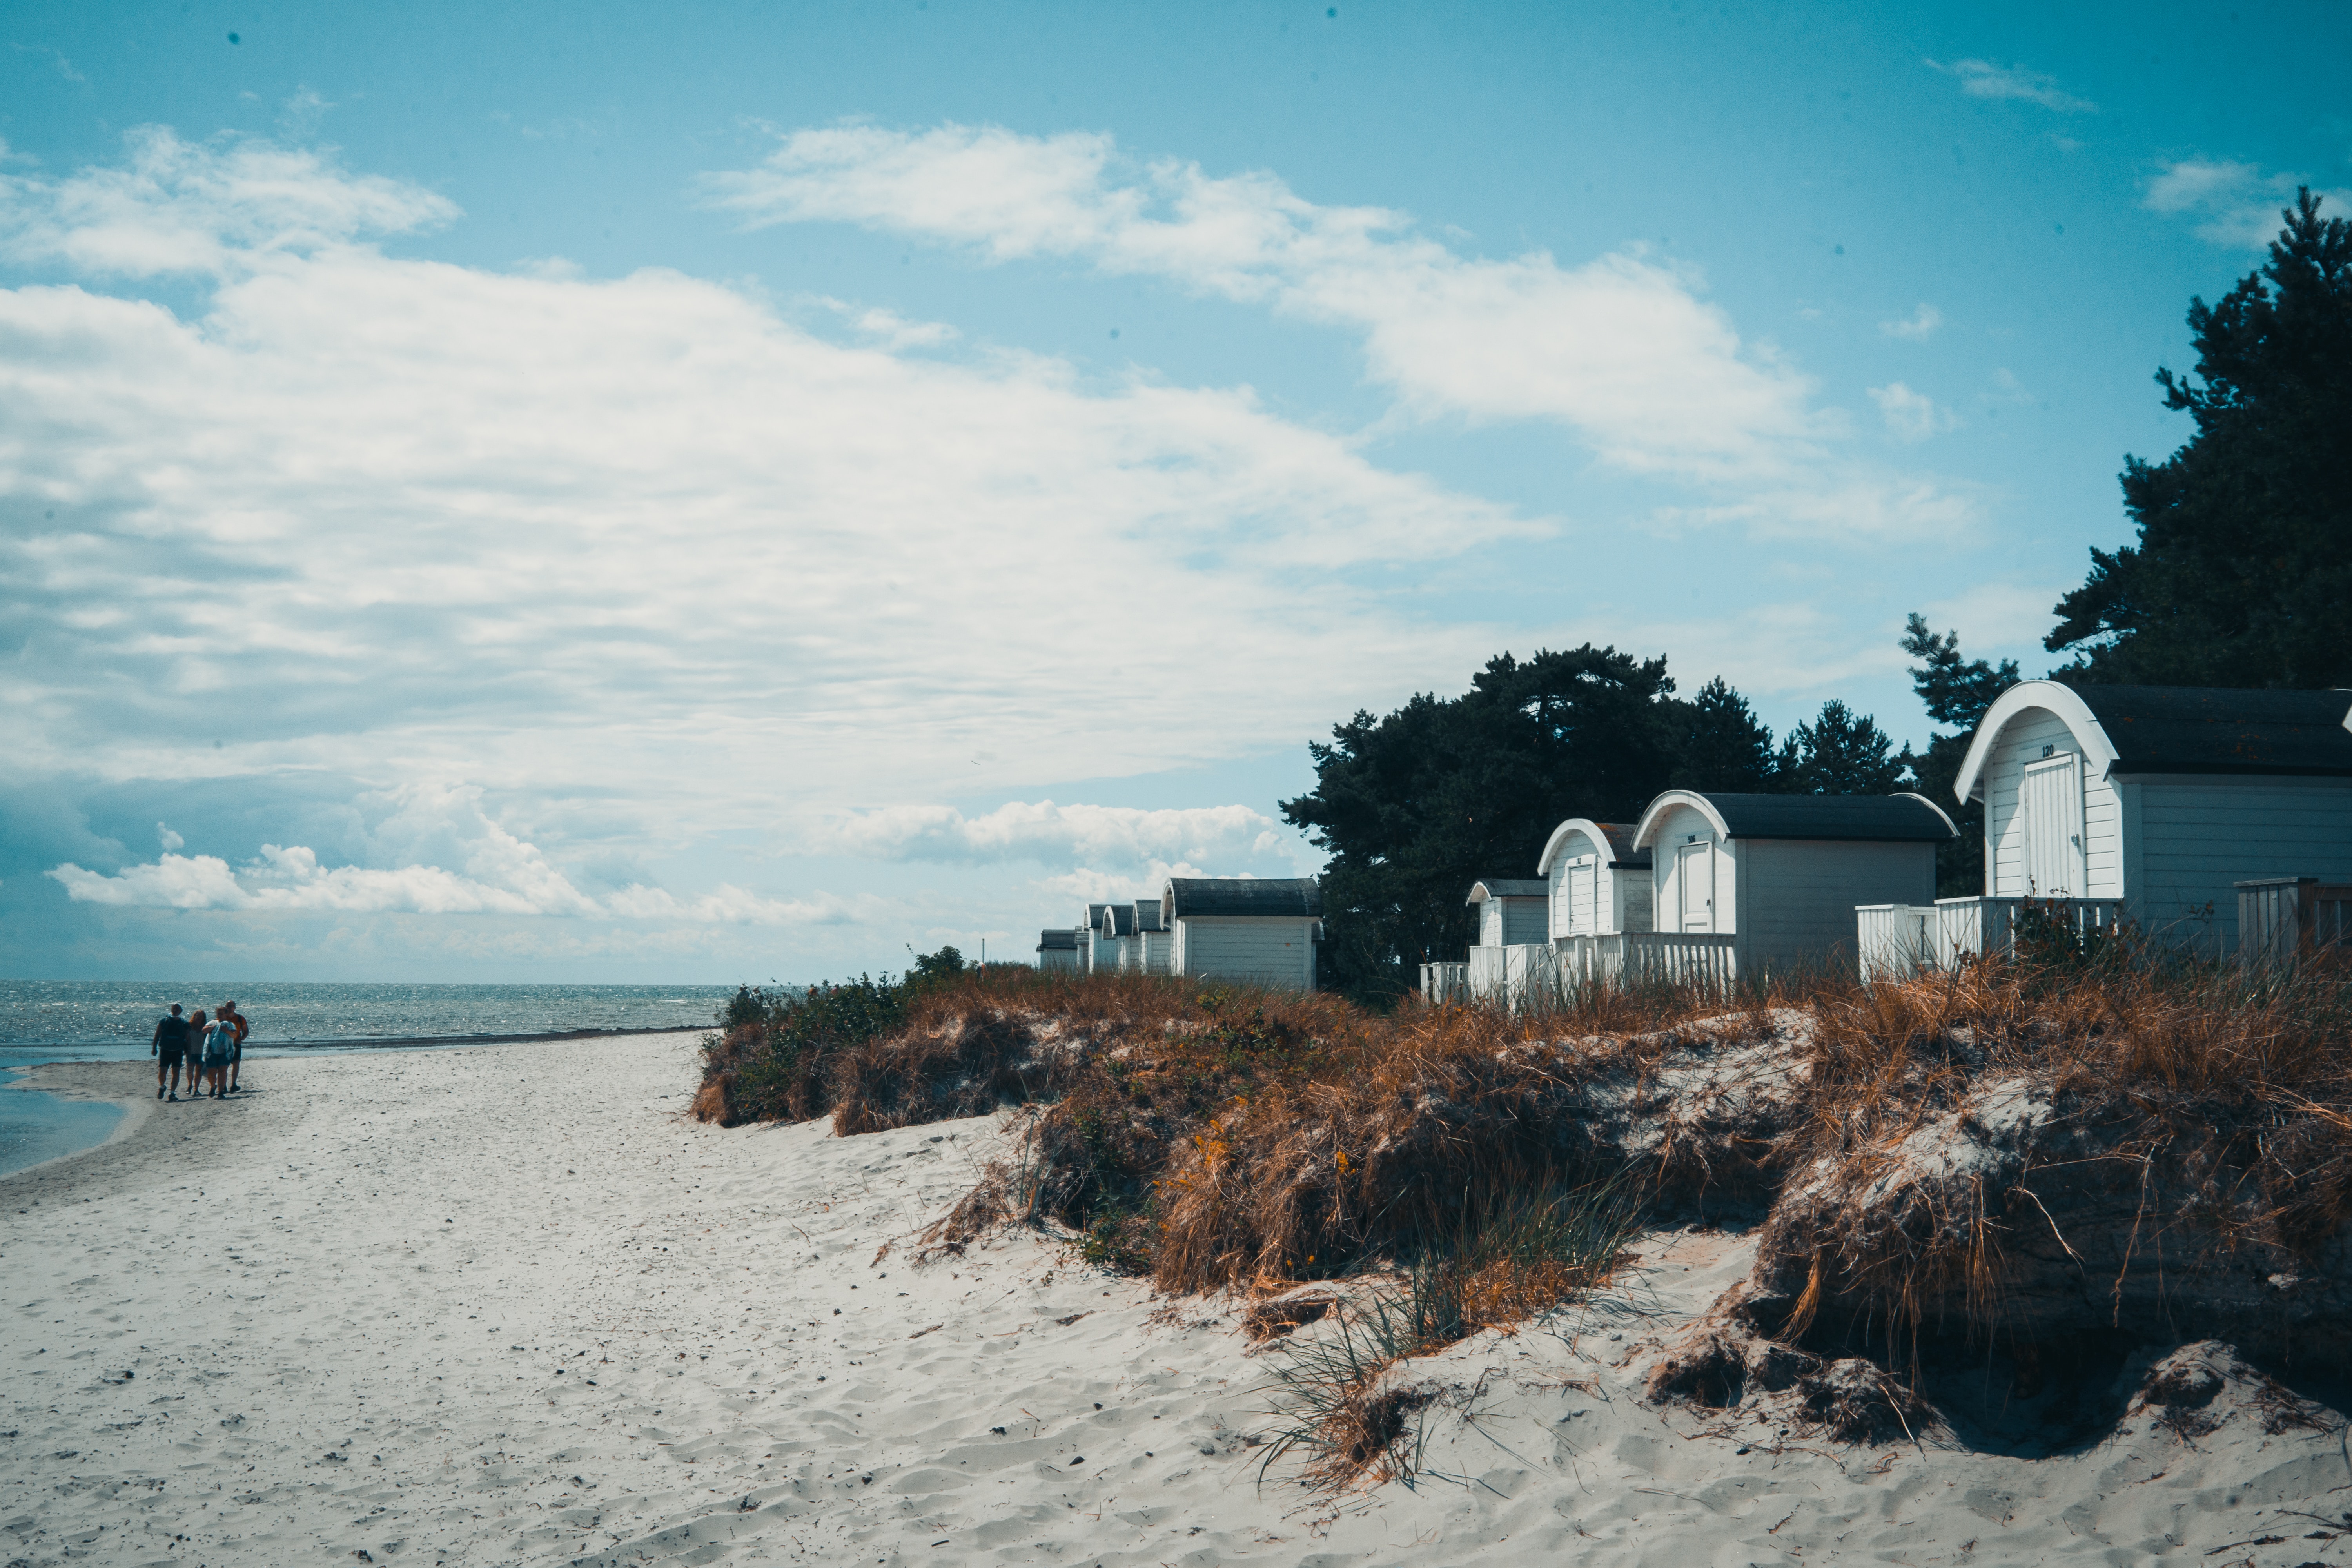 Holzhaäuser Ferienhäuser am Strand, nah vom Meer in Skandinavien